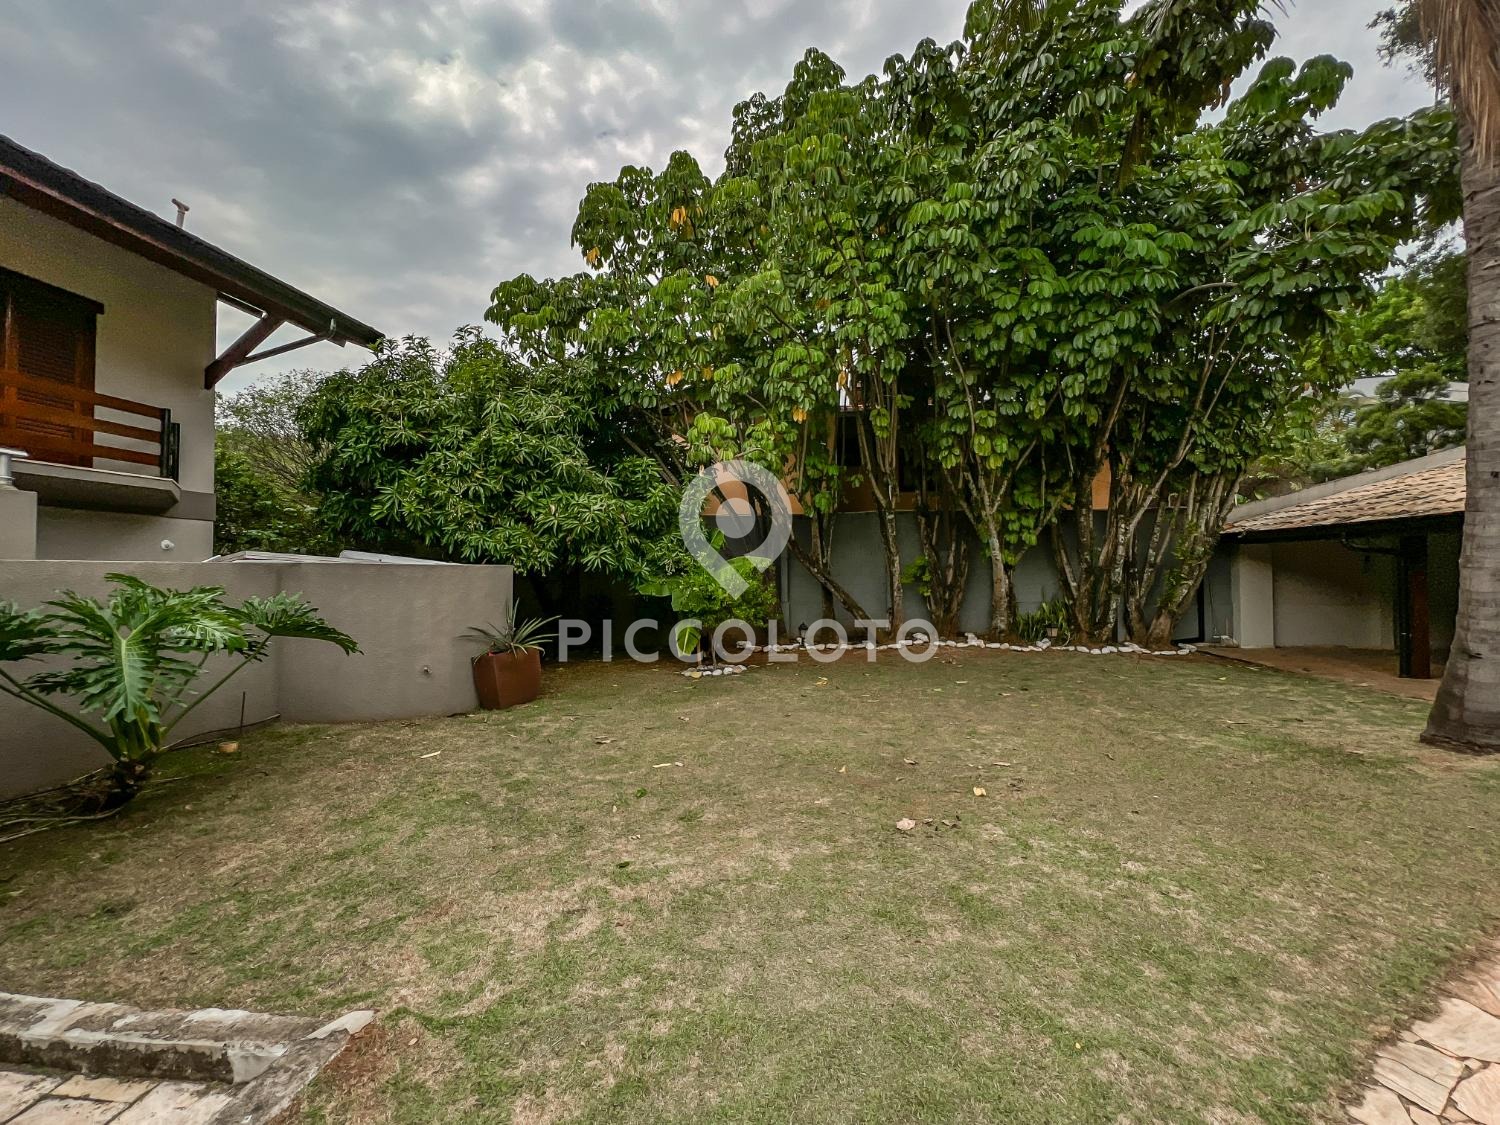 Piccoloto -Casa para alugar no Bairro das Palmeiras em Campinas